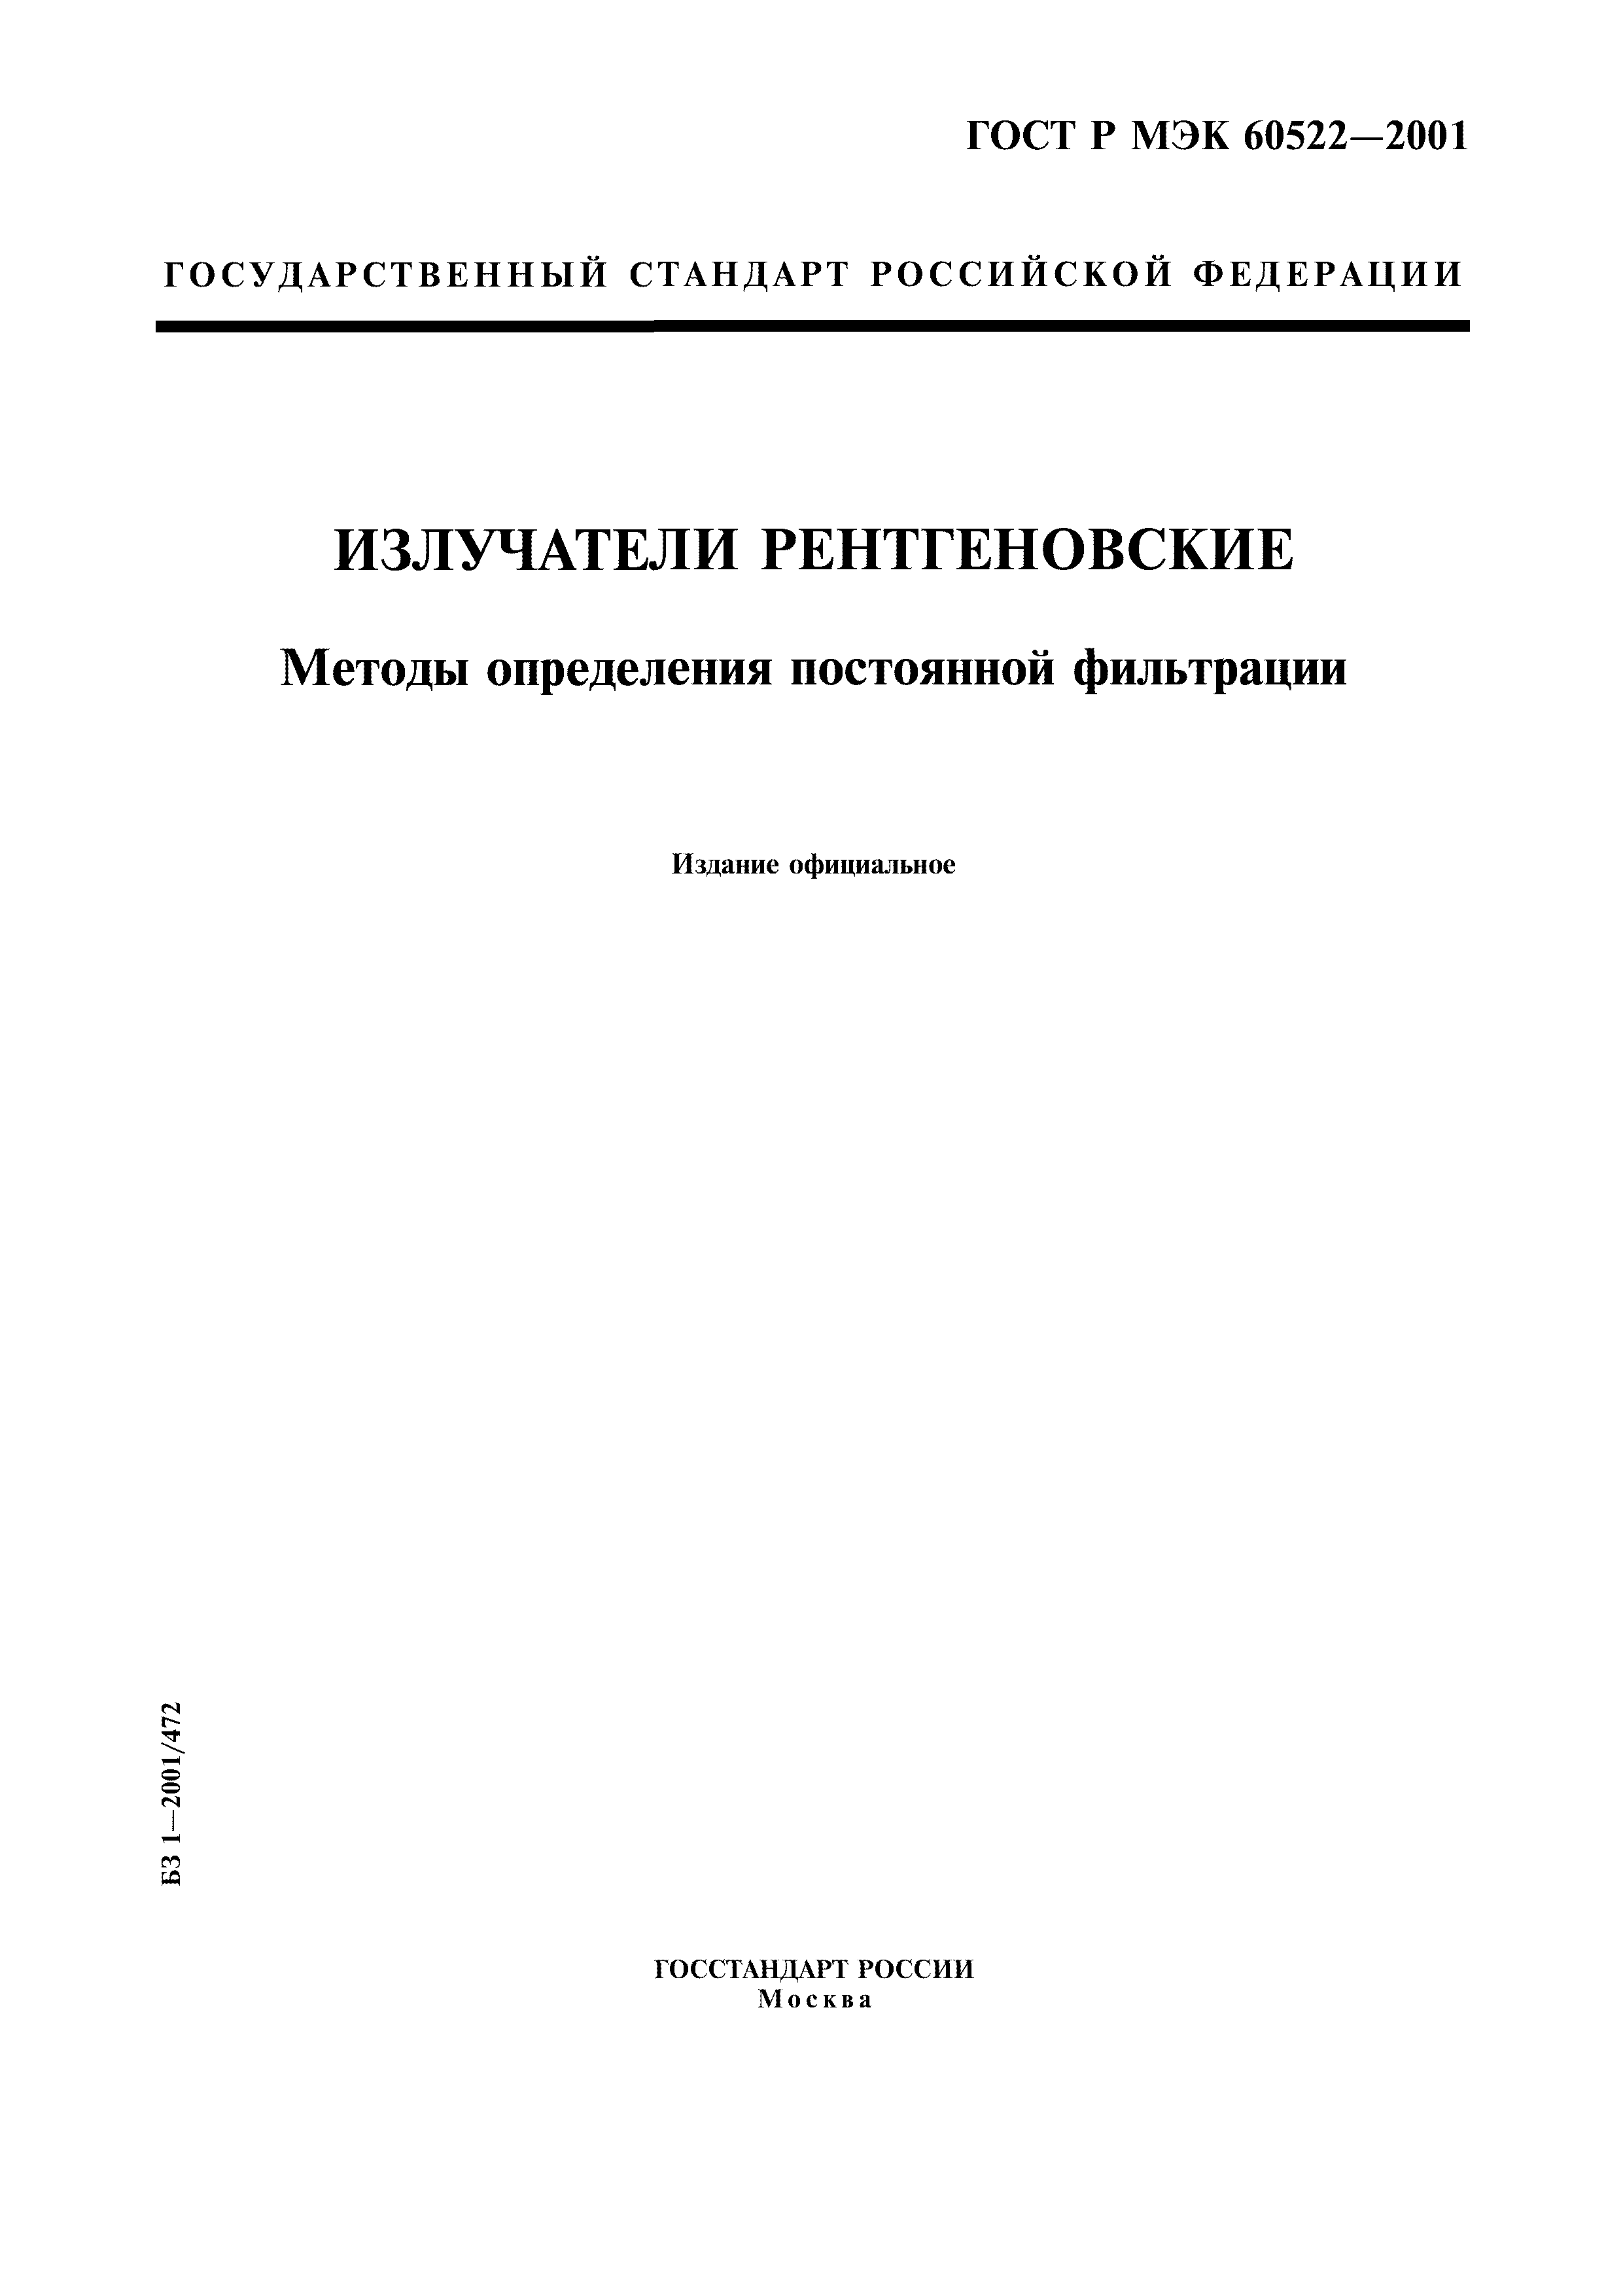 ГОСТ Р МЭК 60522-2001